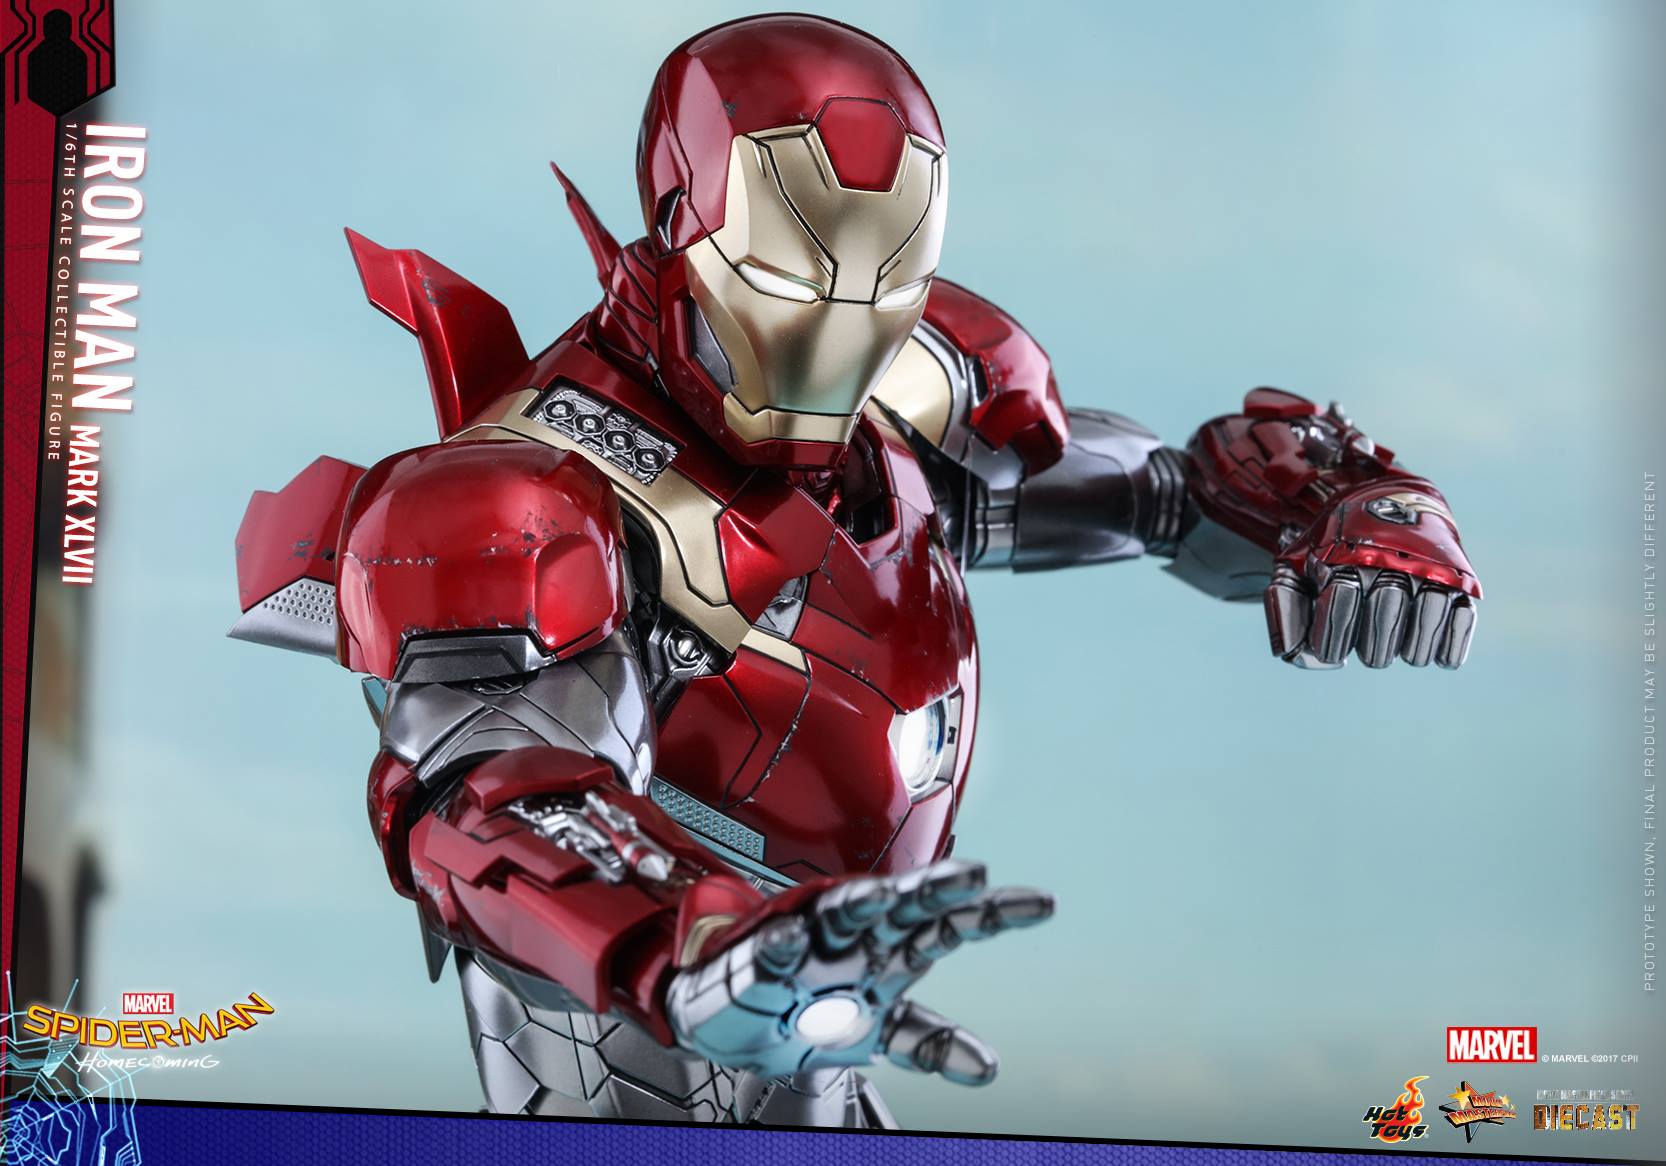 Hot-Toys-Iron-Man-Mark-XLVII-Figure-002.jpg